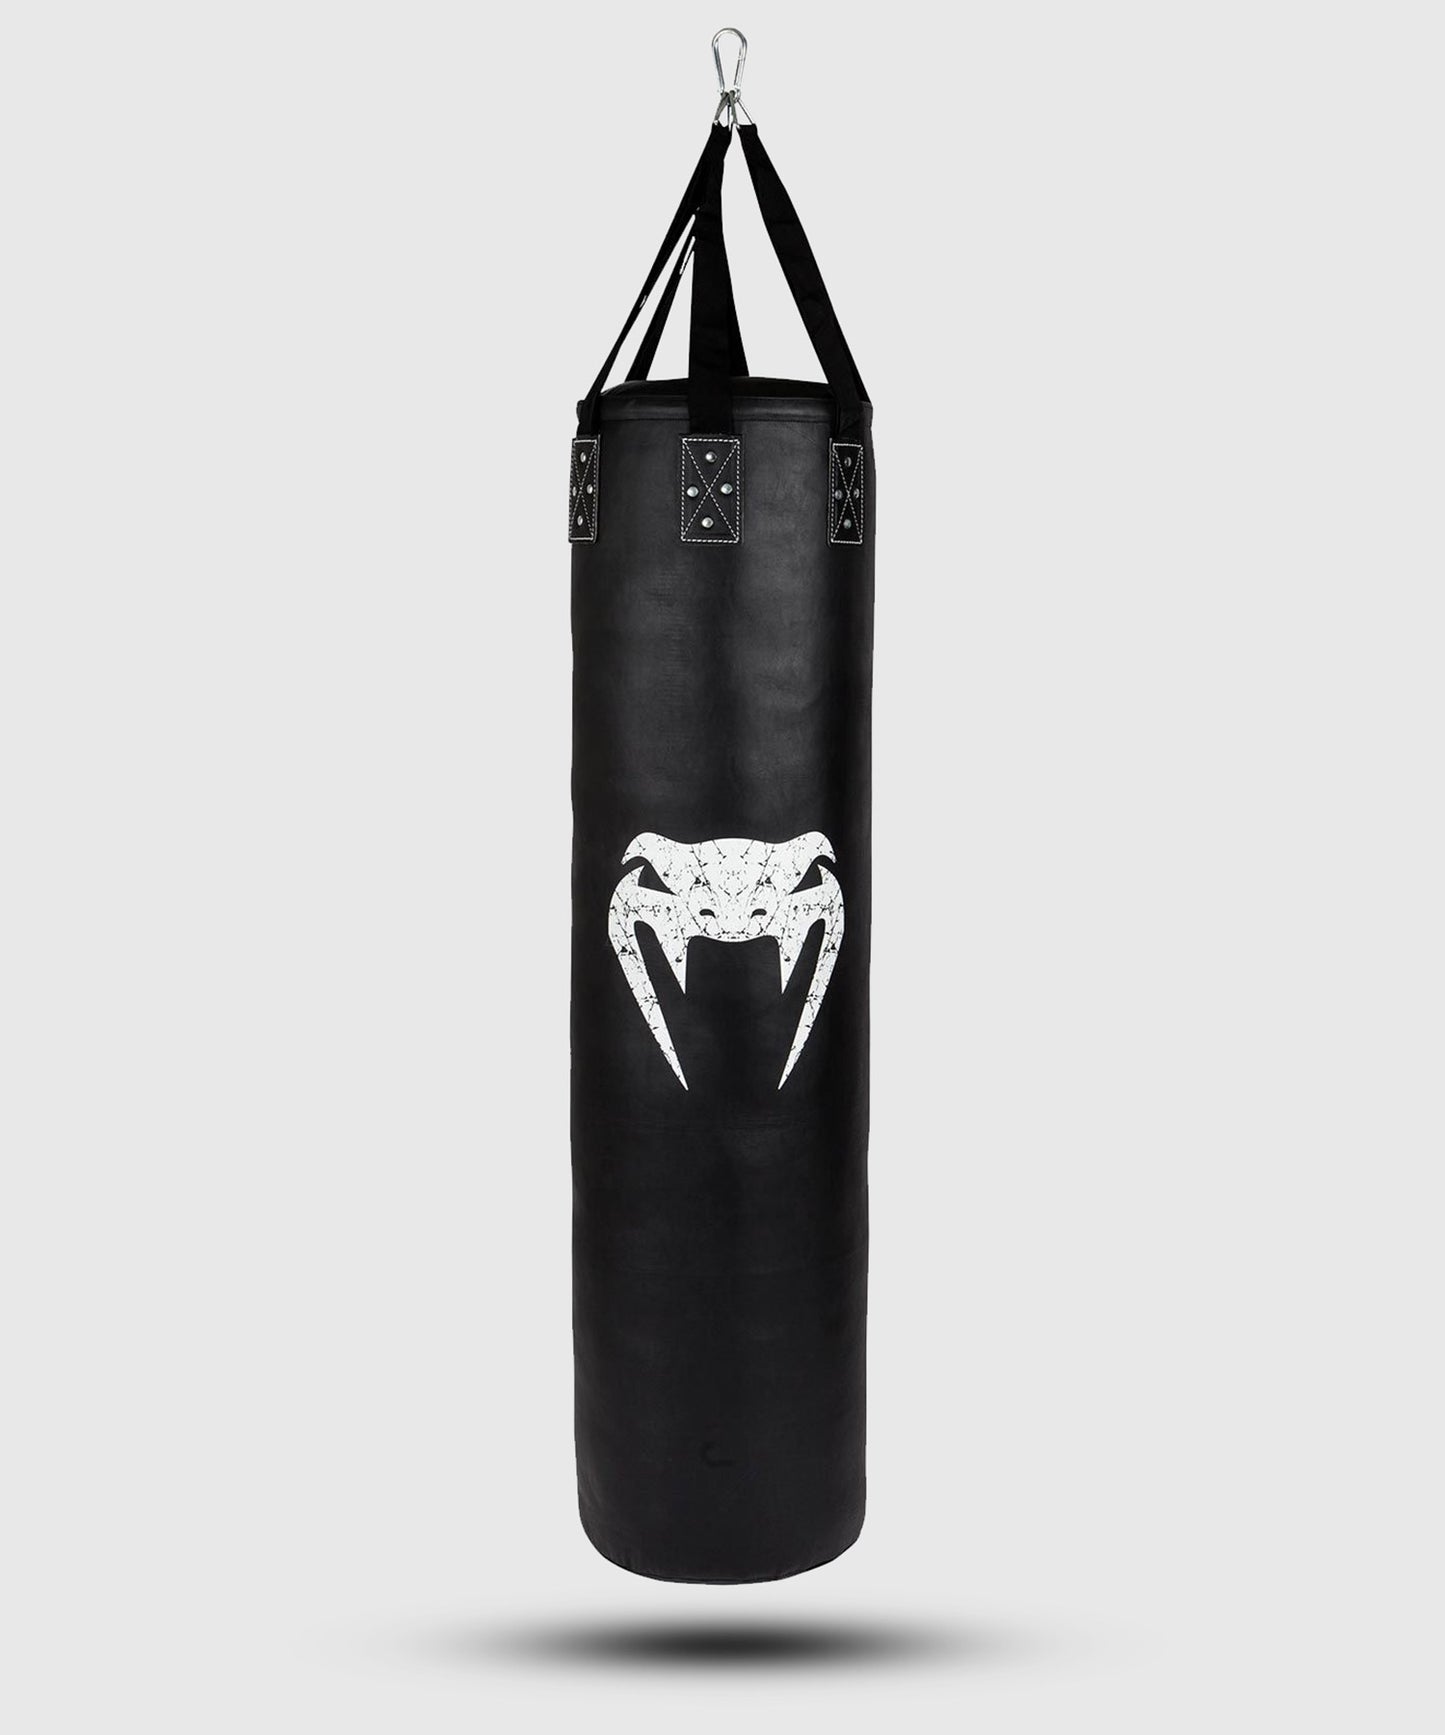 Saco de Boxeo Venum Challenger (gancho incluido) - Negro/Blanco - 130 cm - Lleno